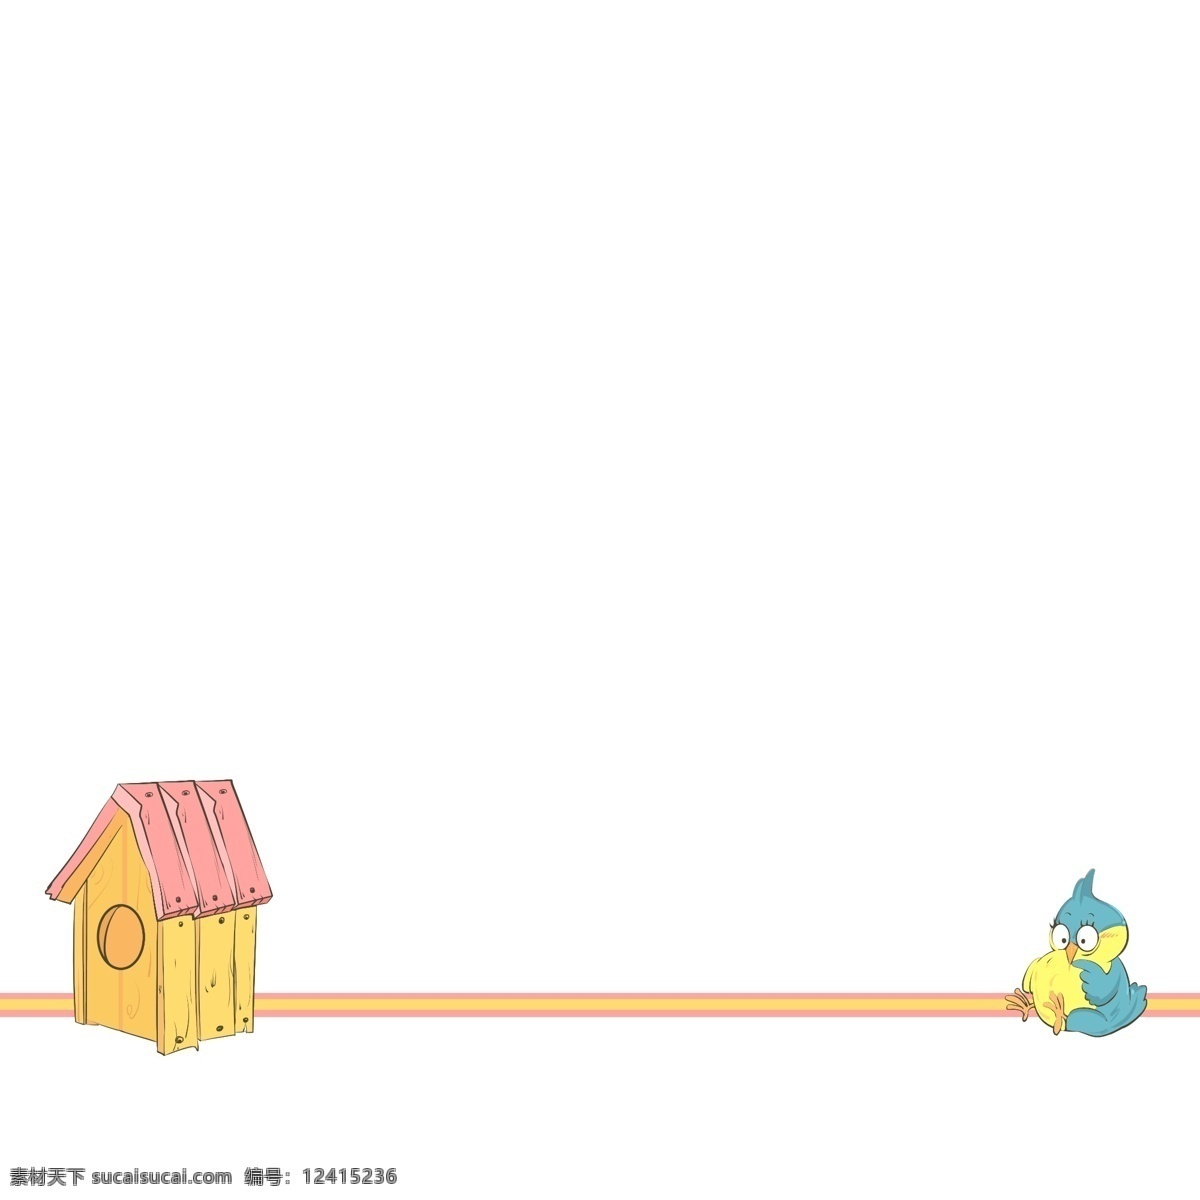 分割线 鸟 卡通 插画 可爱的小鸟 卡通插画 分割线插画 简易分割线 装饰插画 动物 房子